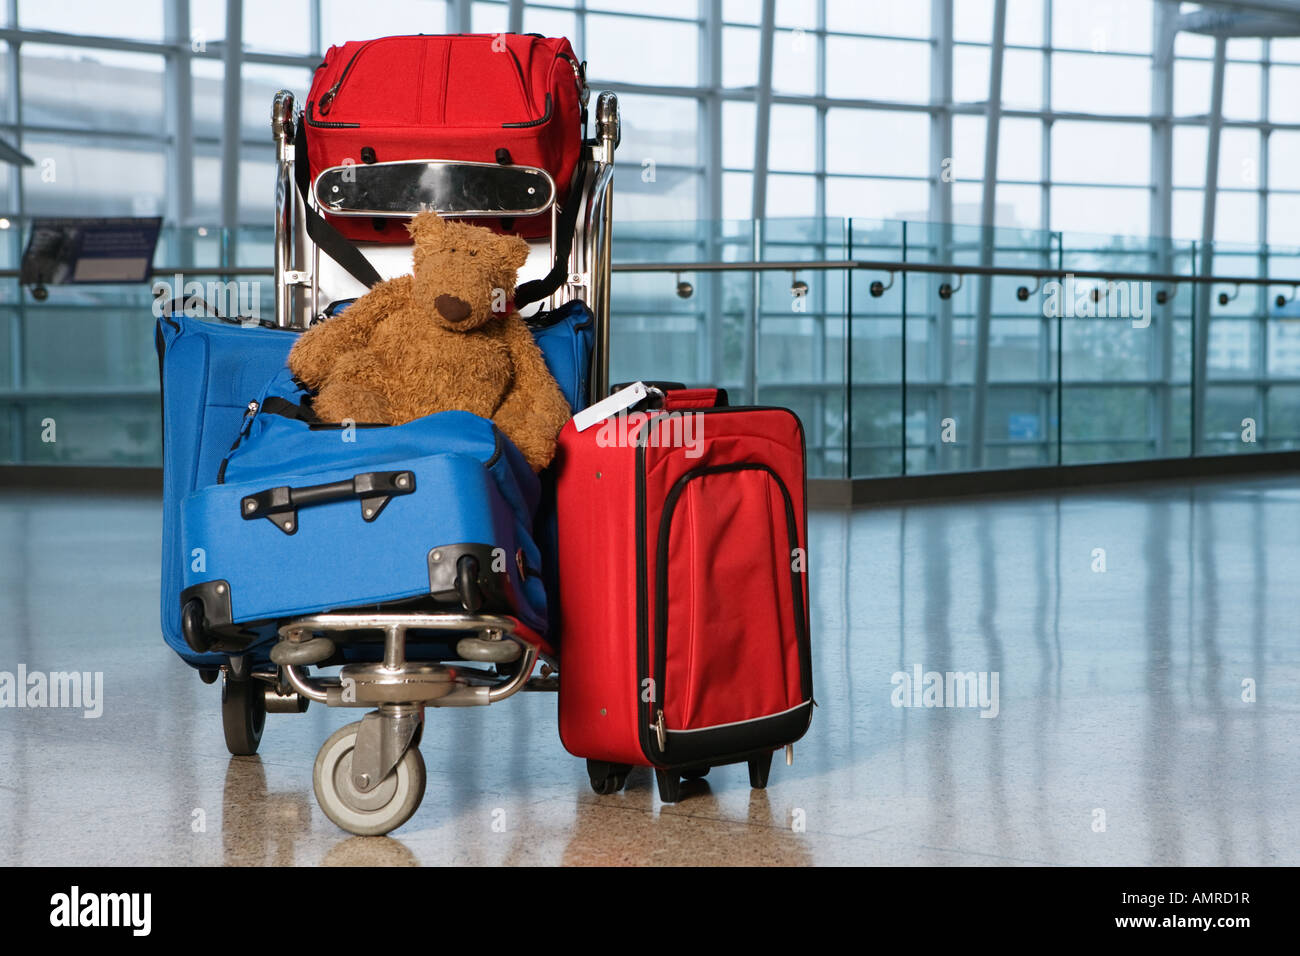 Koffer und Teddybär auf Gepäckwagen Stockfotografie - Alamy